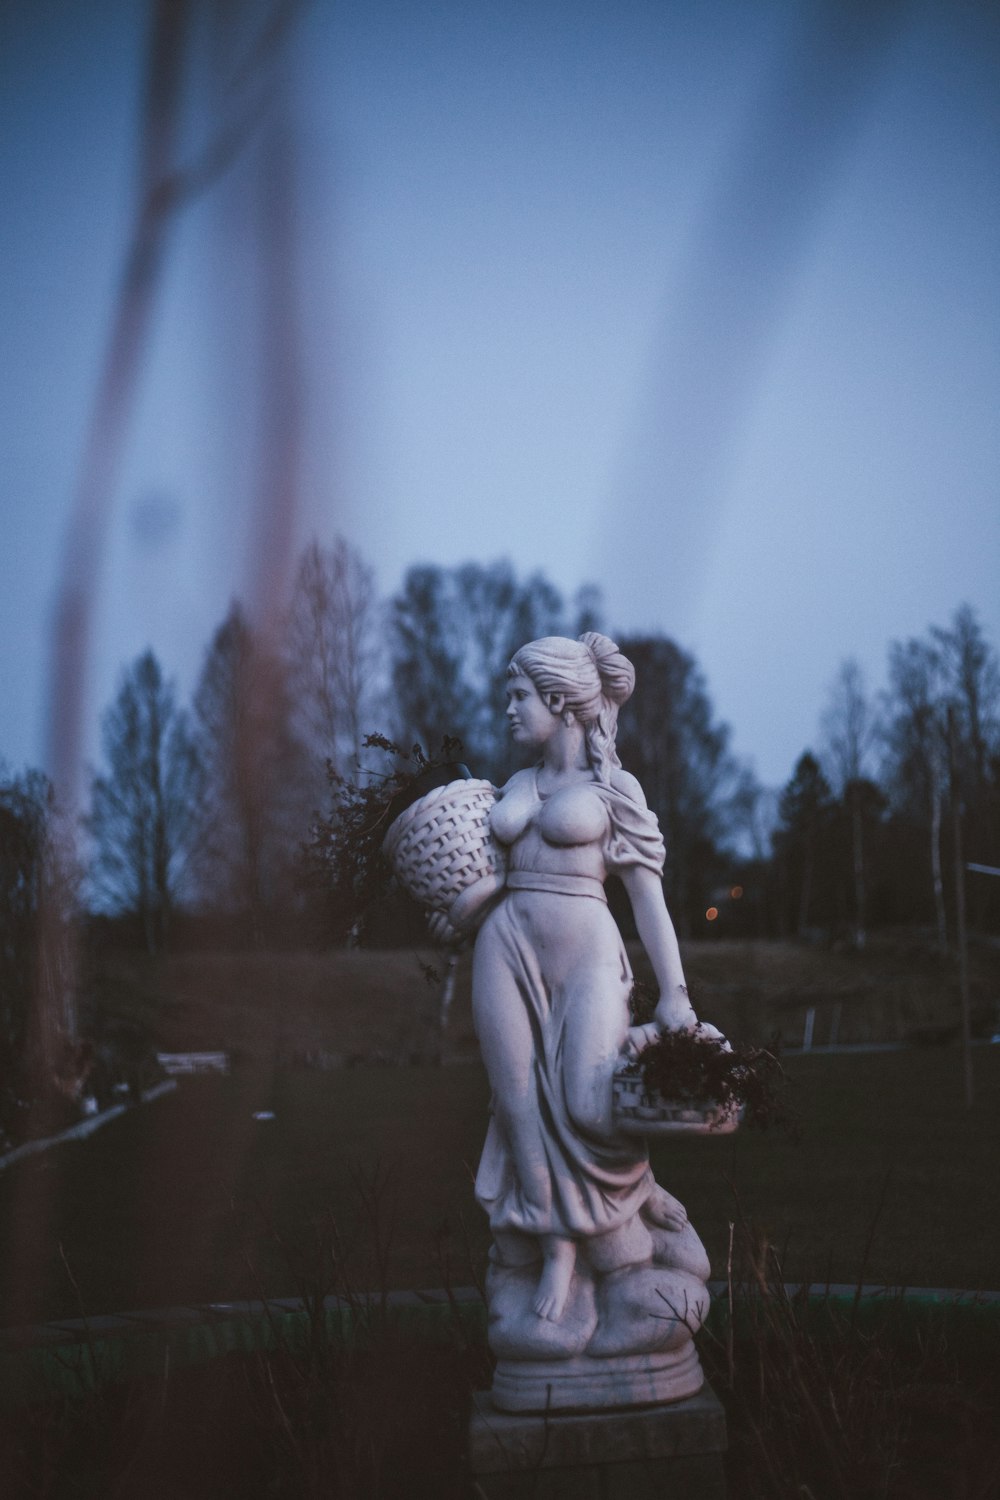 꽃 바구니를 들고 있는 여성의 동상